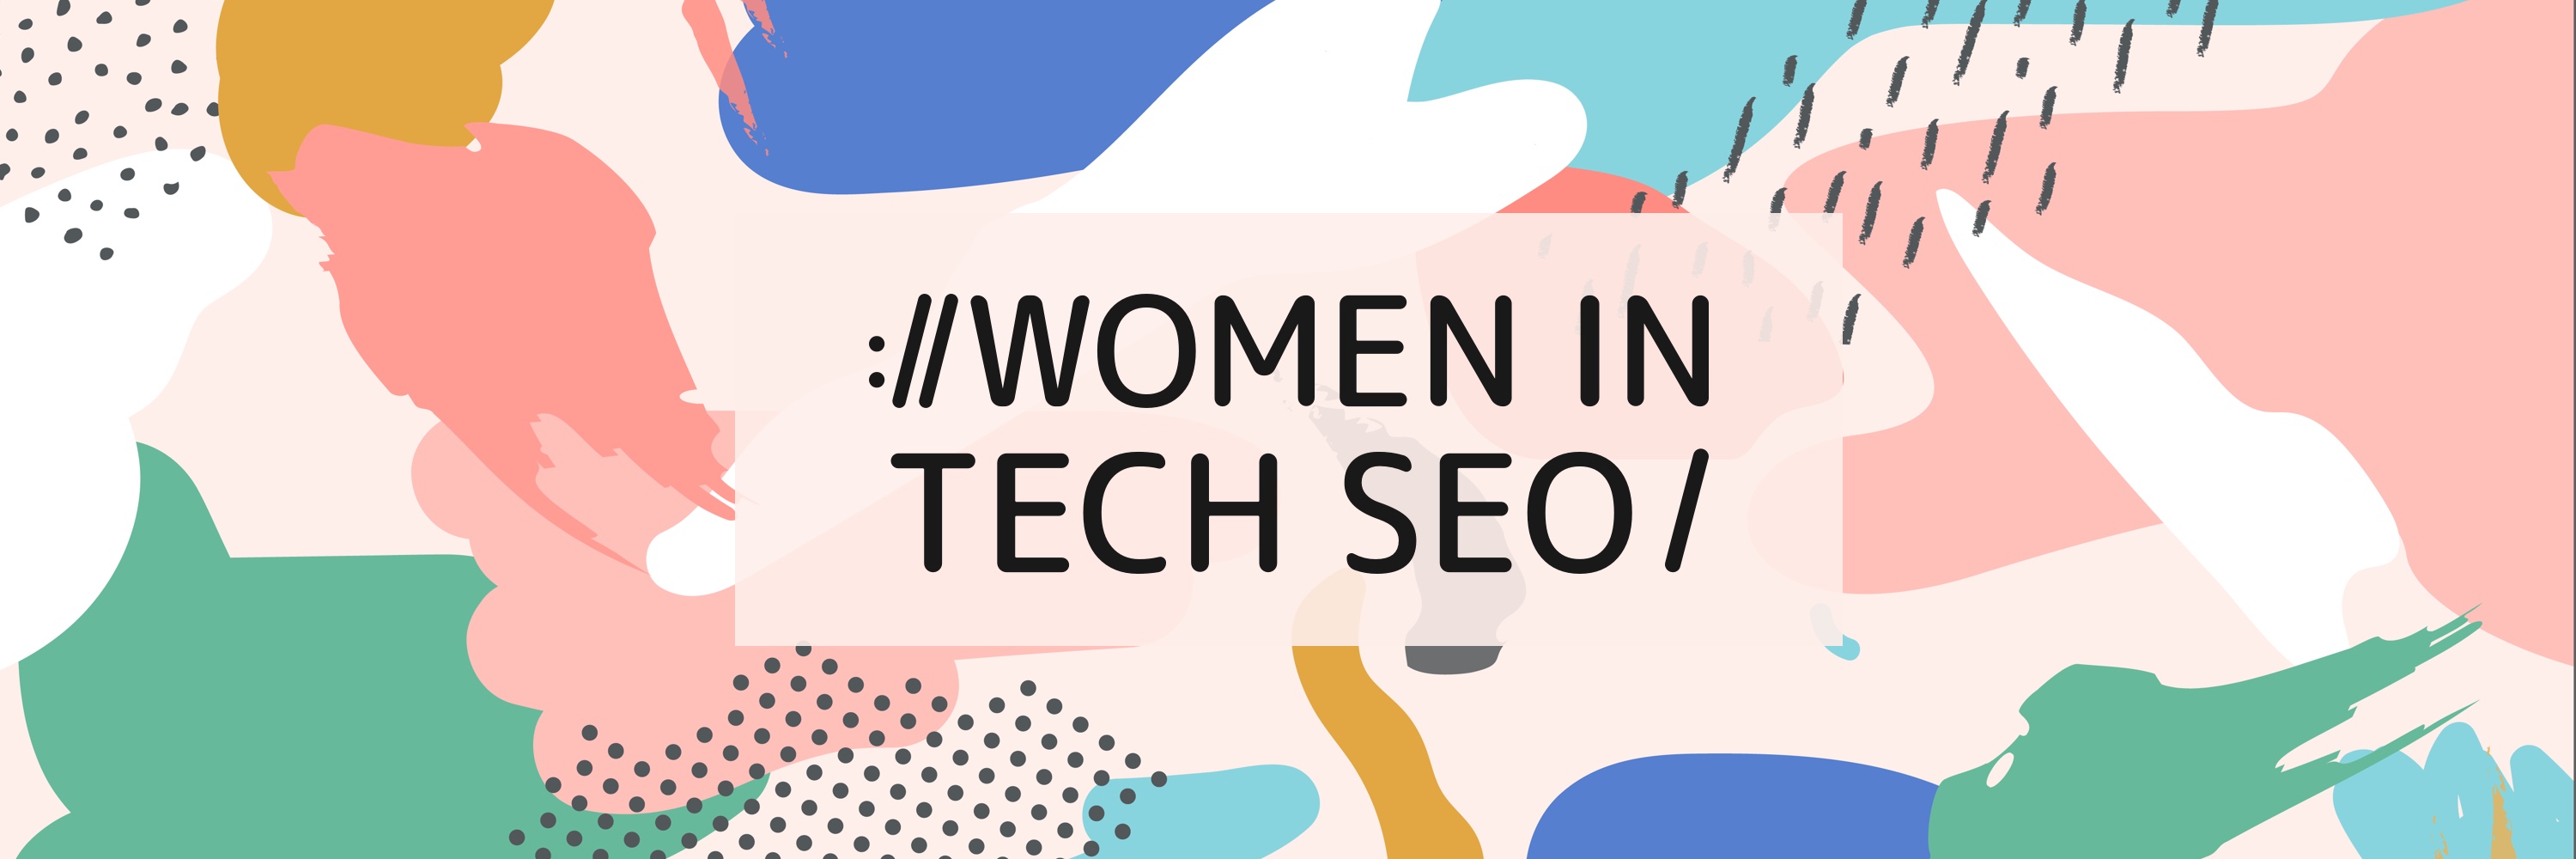 Women in Tech SEO - Freelancers